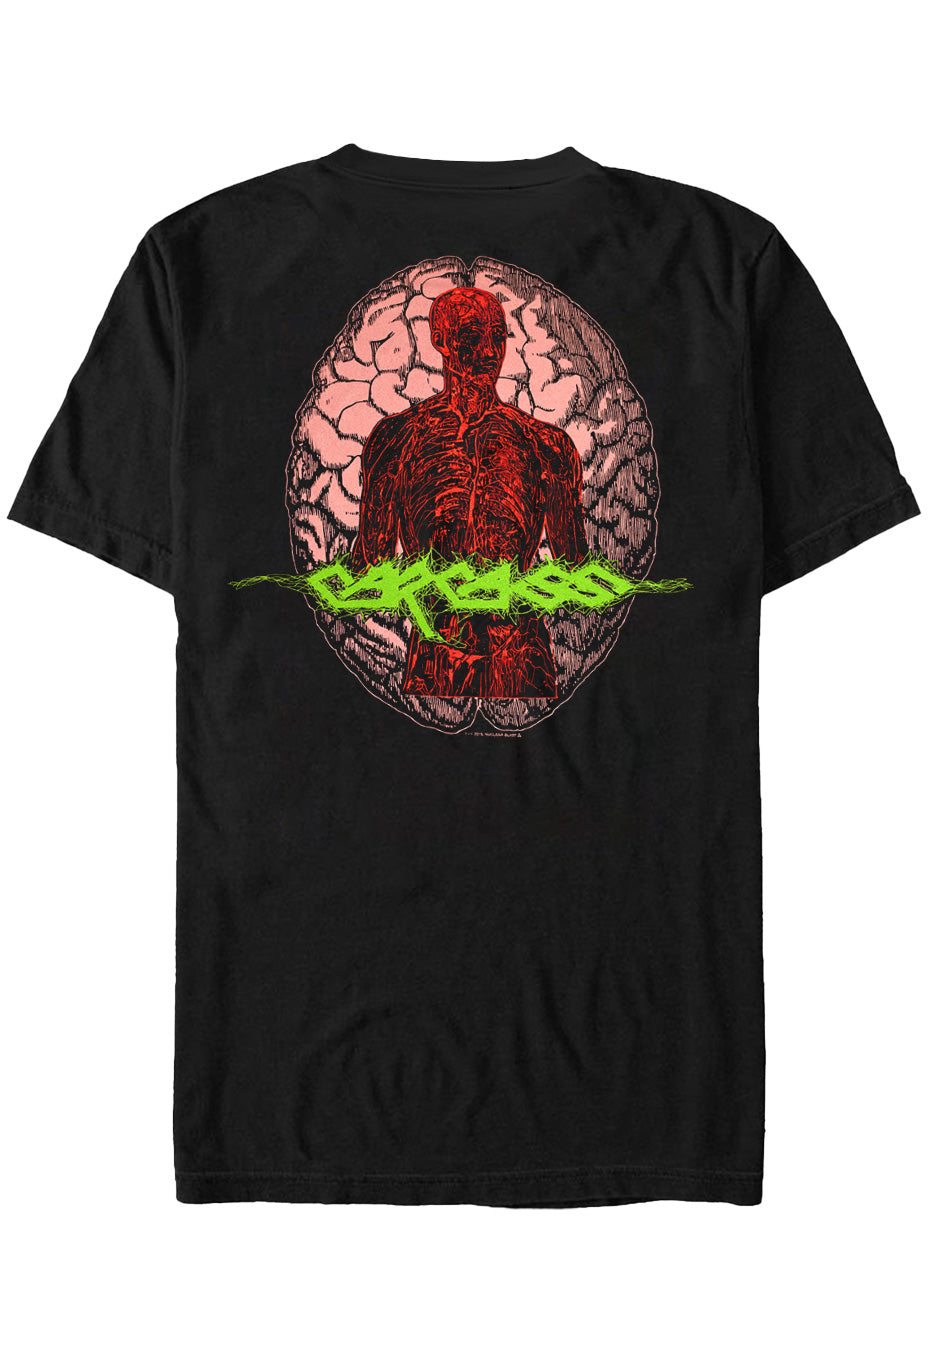 Carcass - Dead Body - T-Shirt